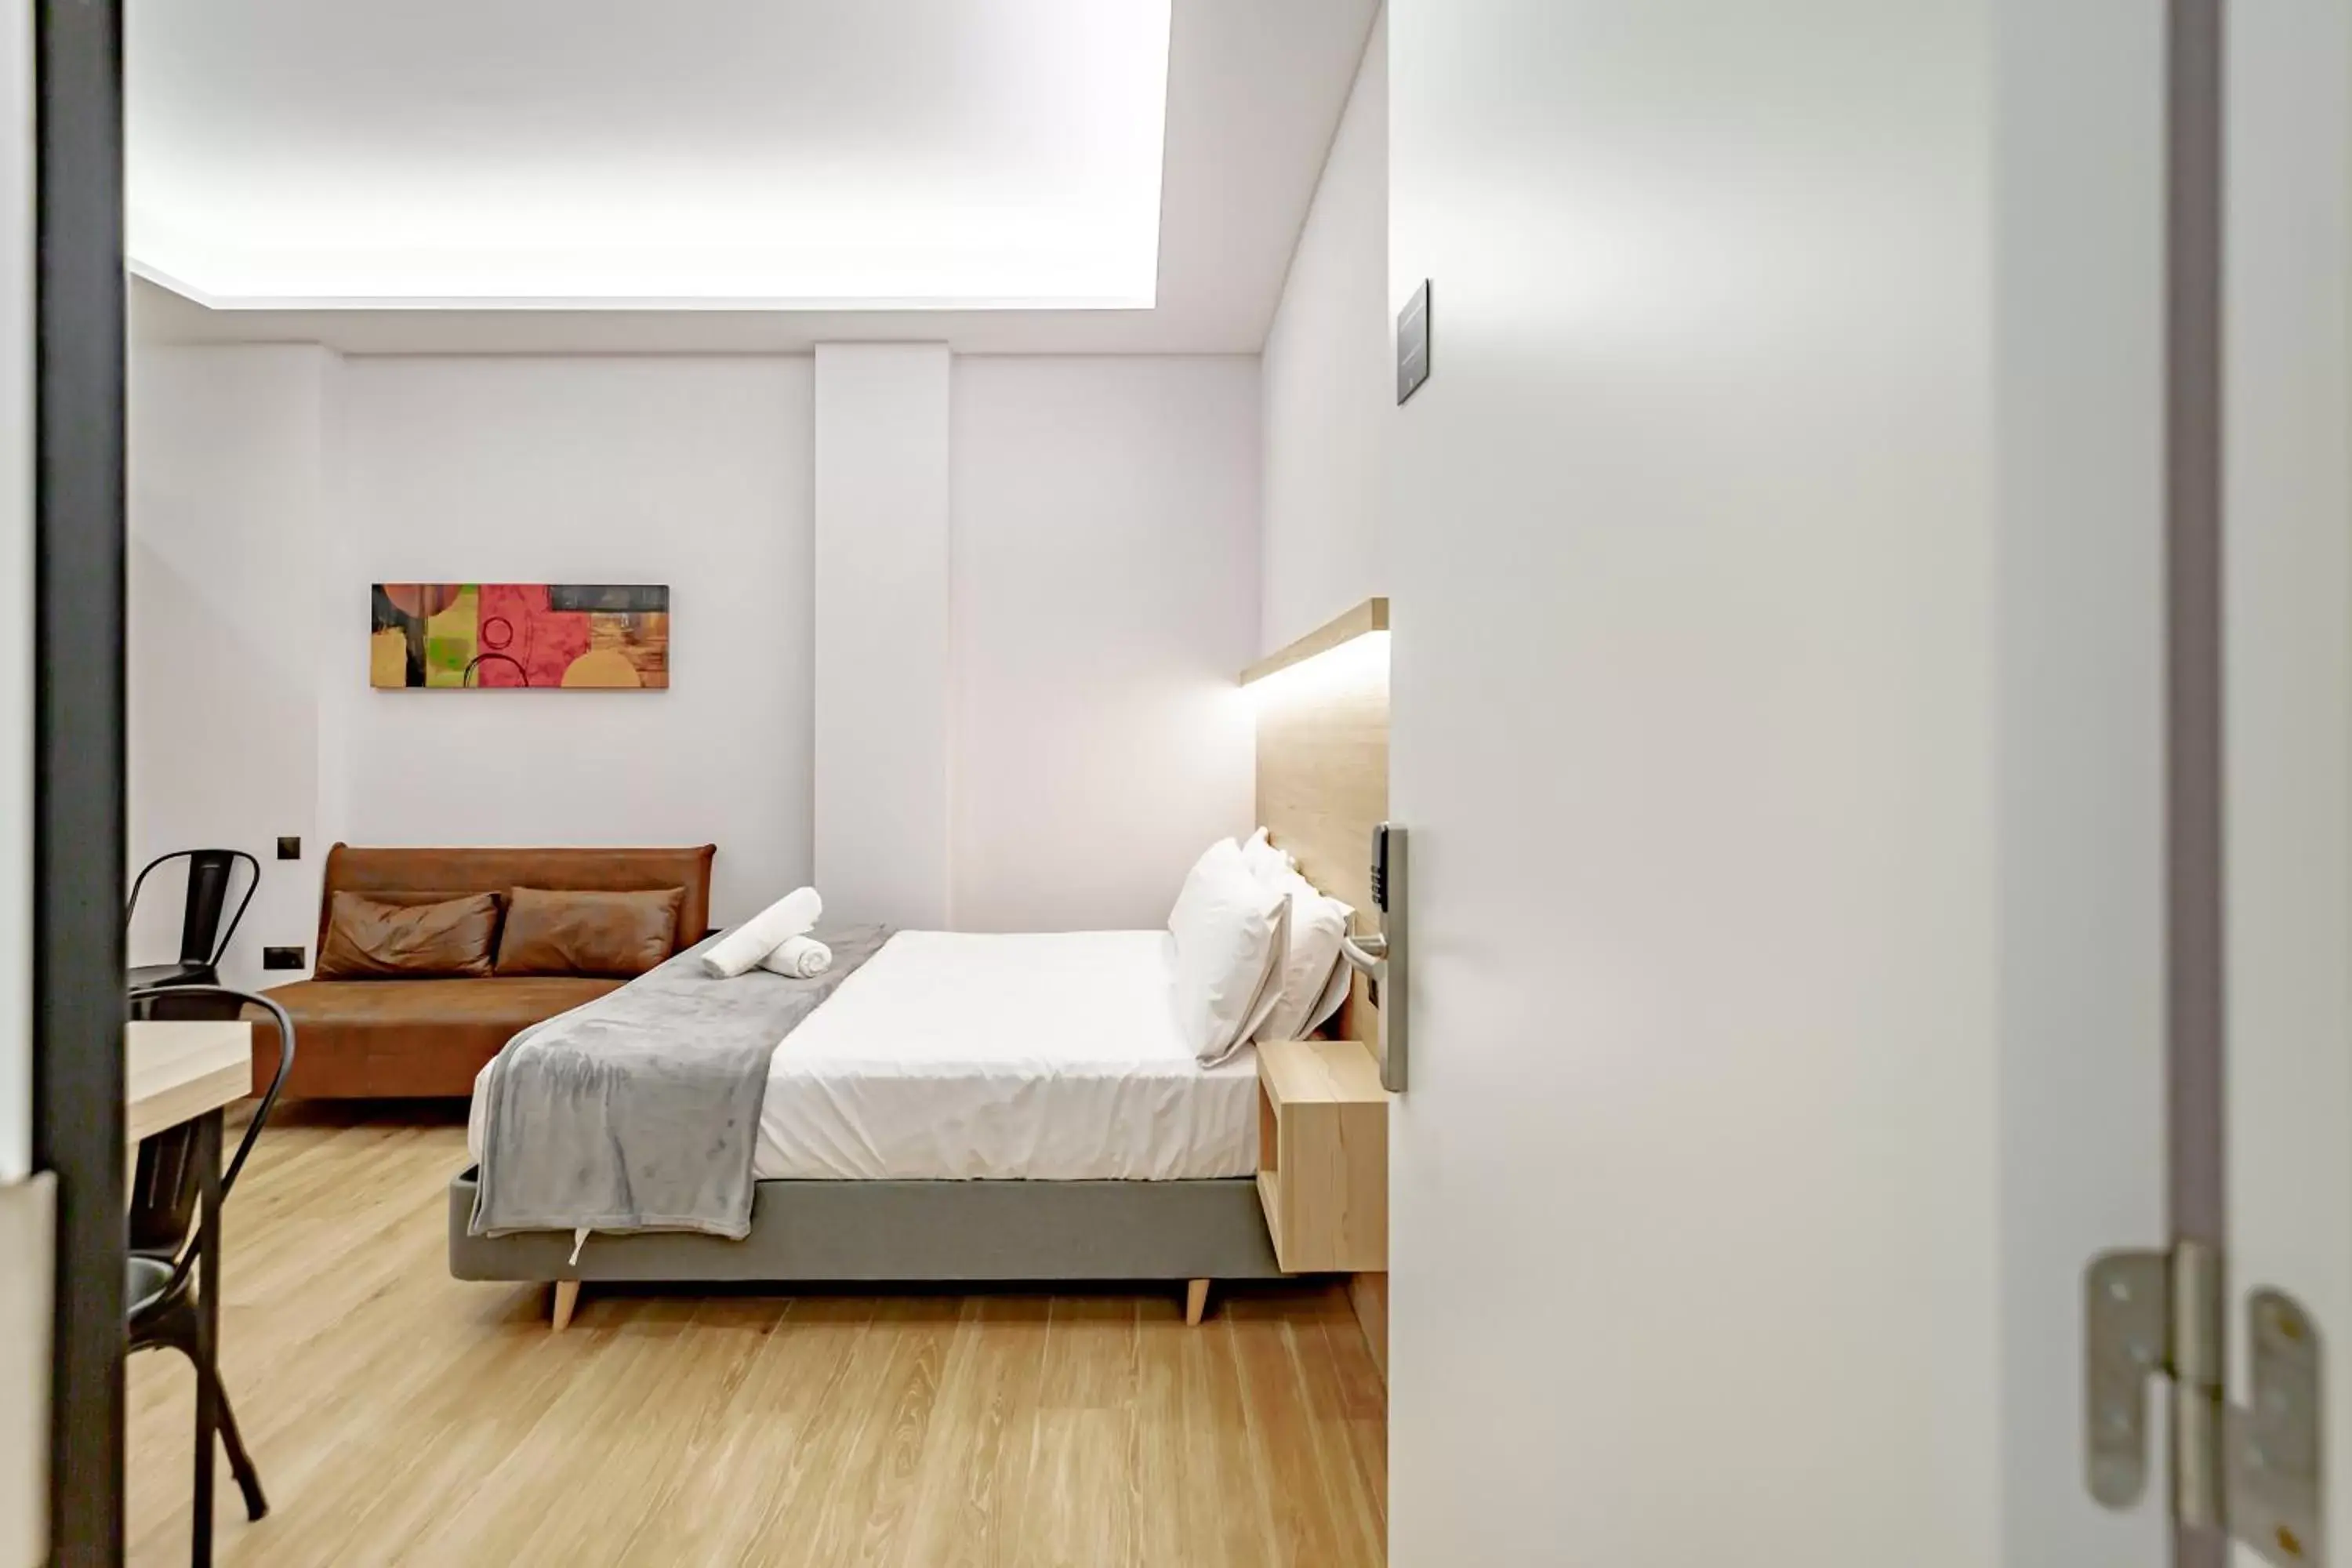 Apartment - Ground Floor in dobohomes - Montesa 20 Apartamentos